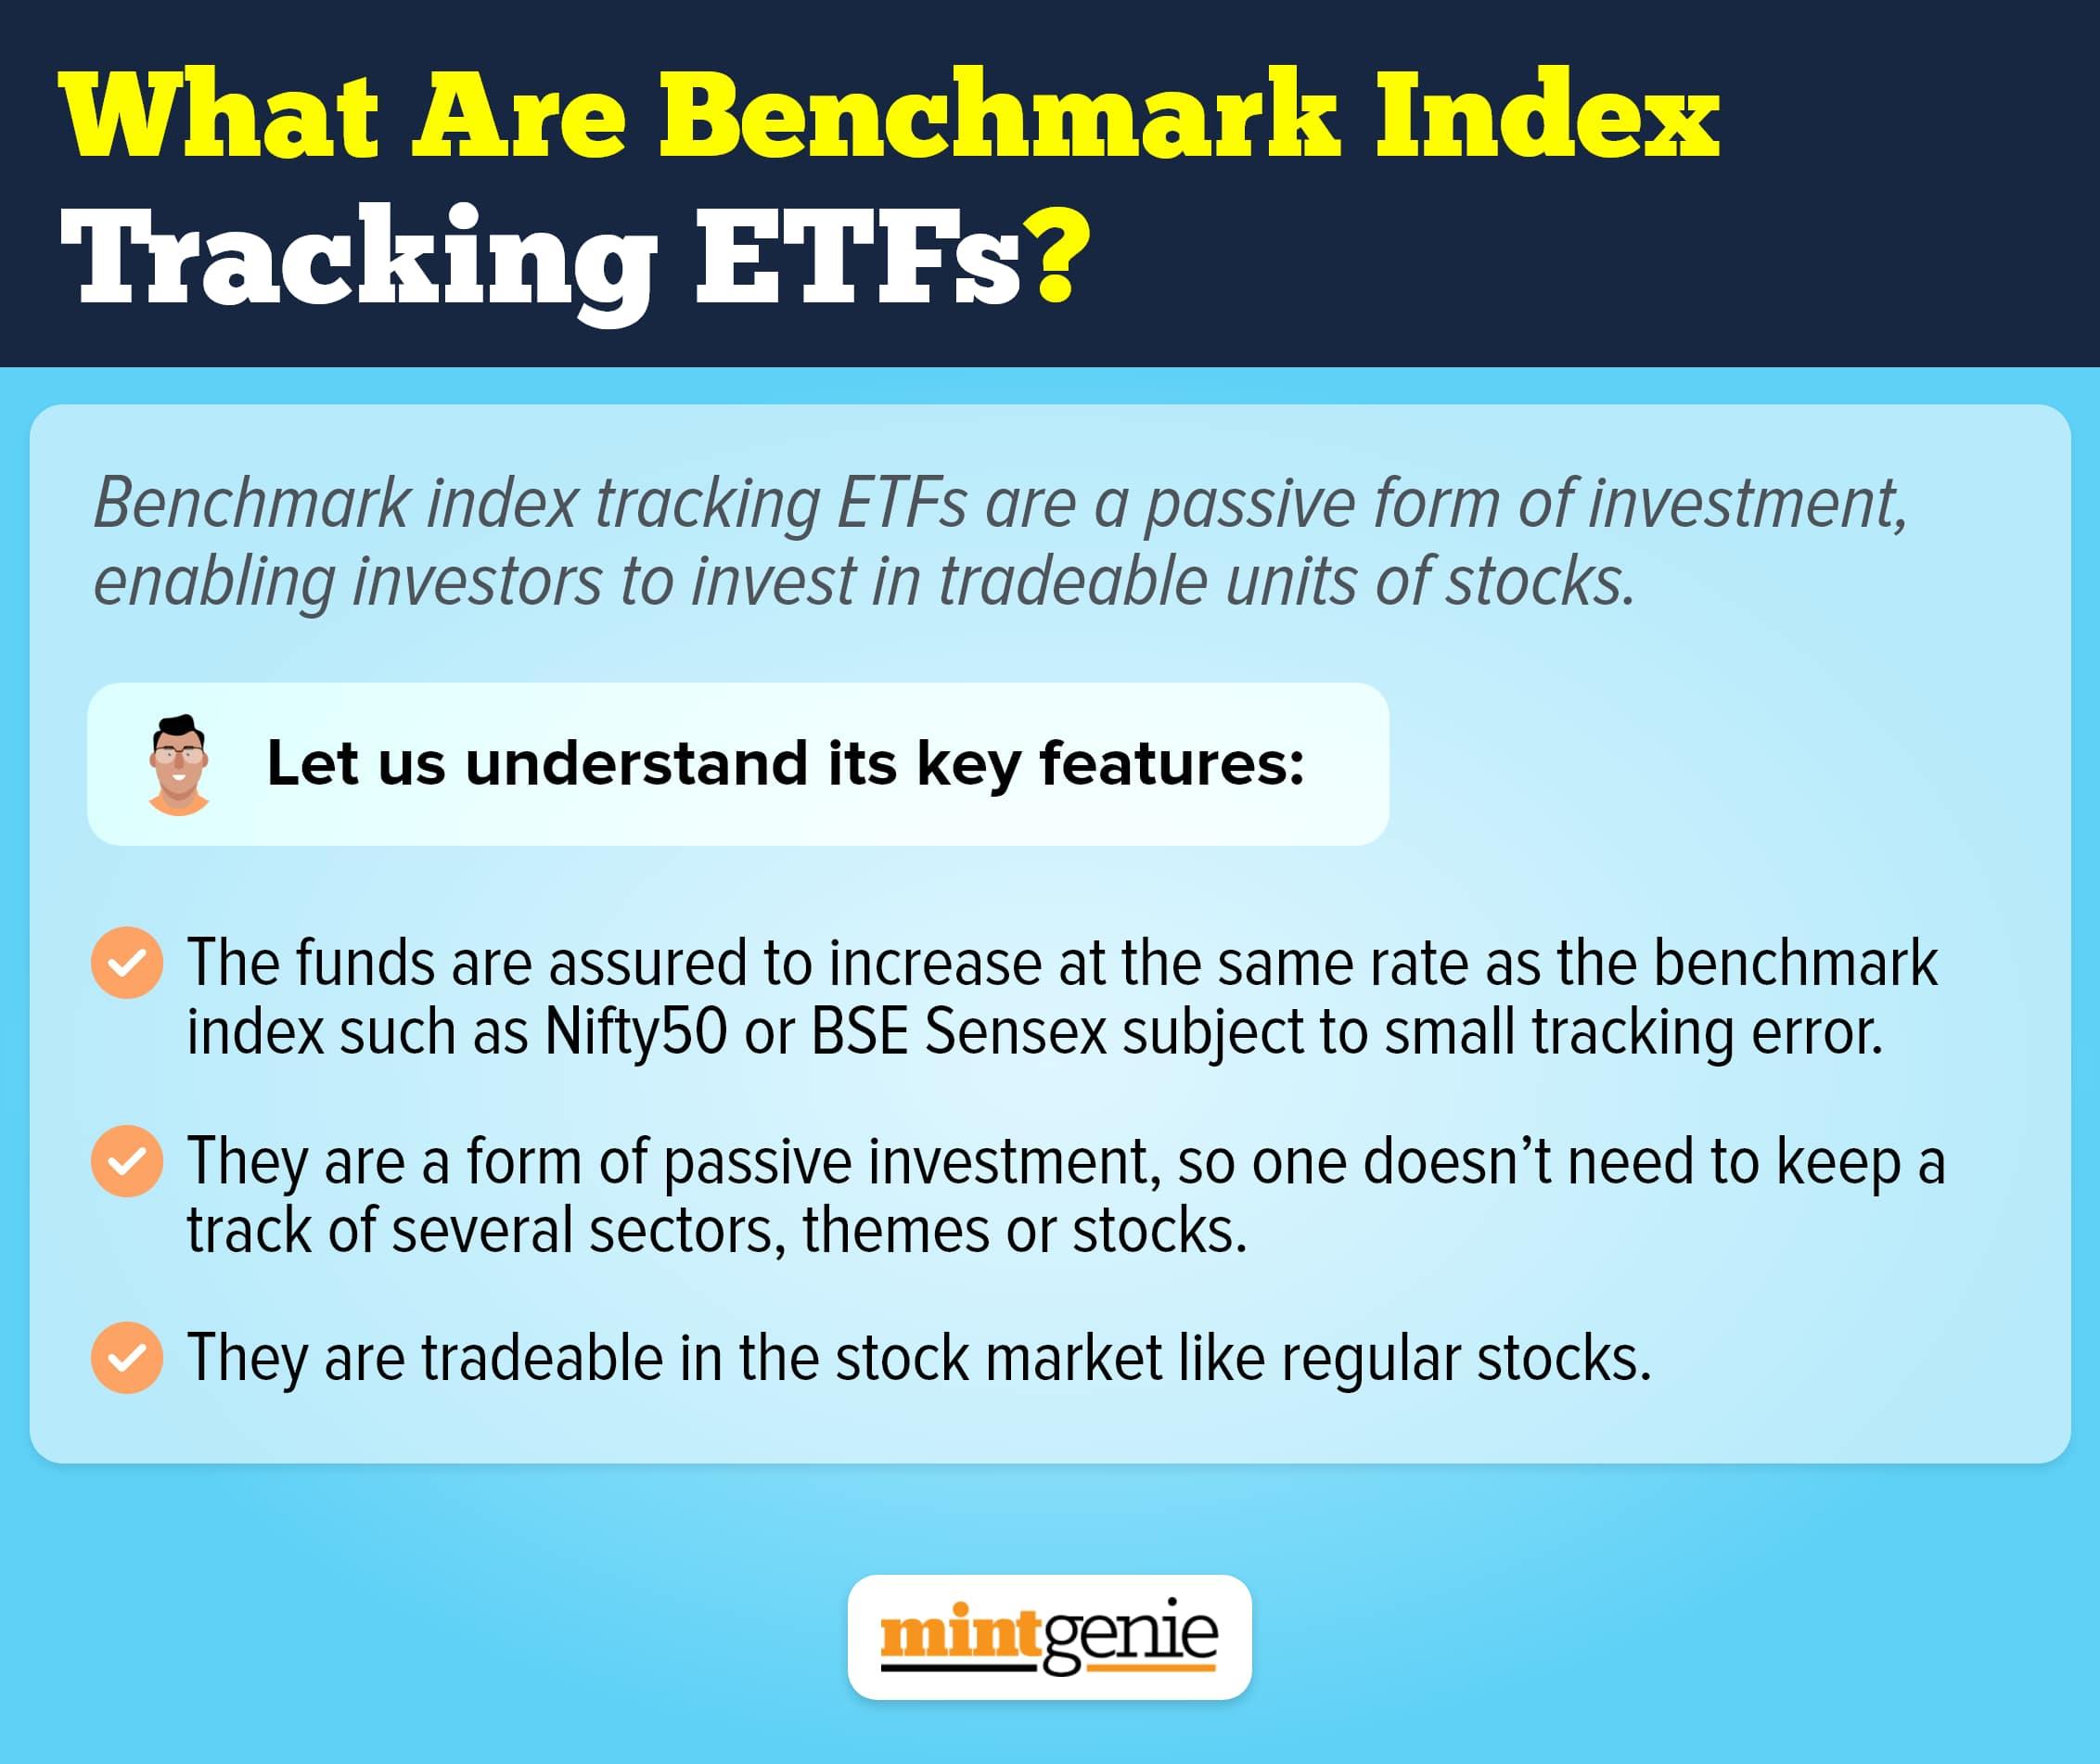 Benchmark index tracking ETFs.